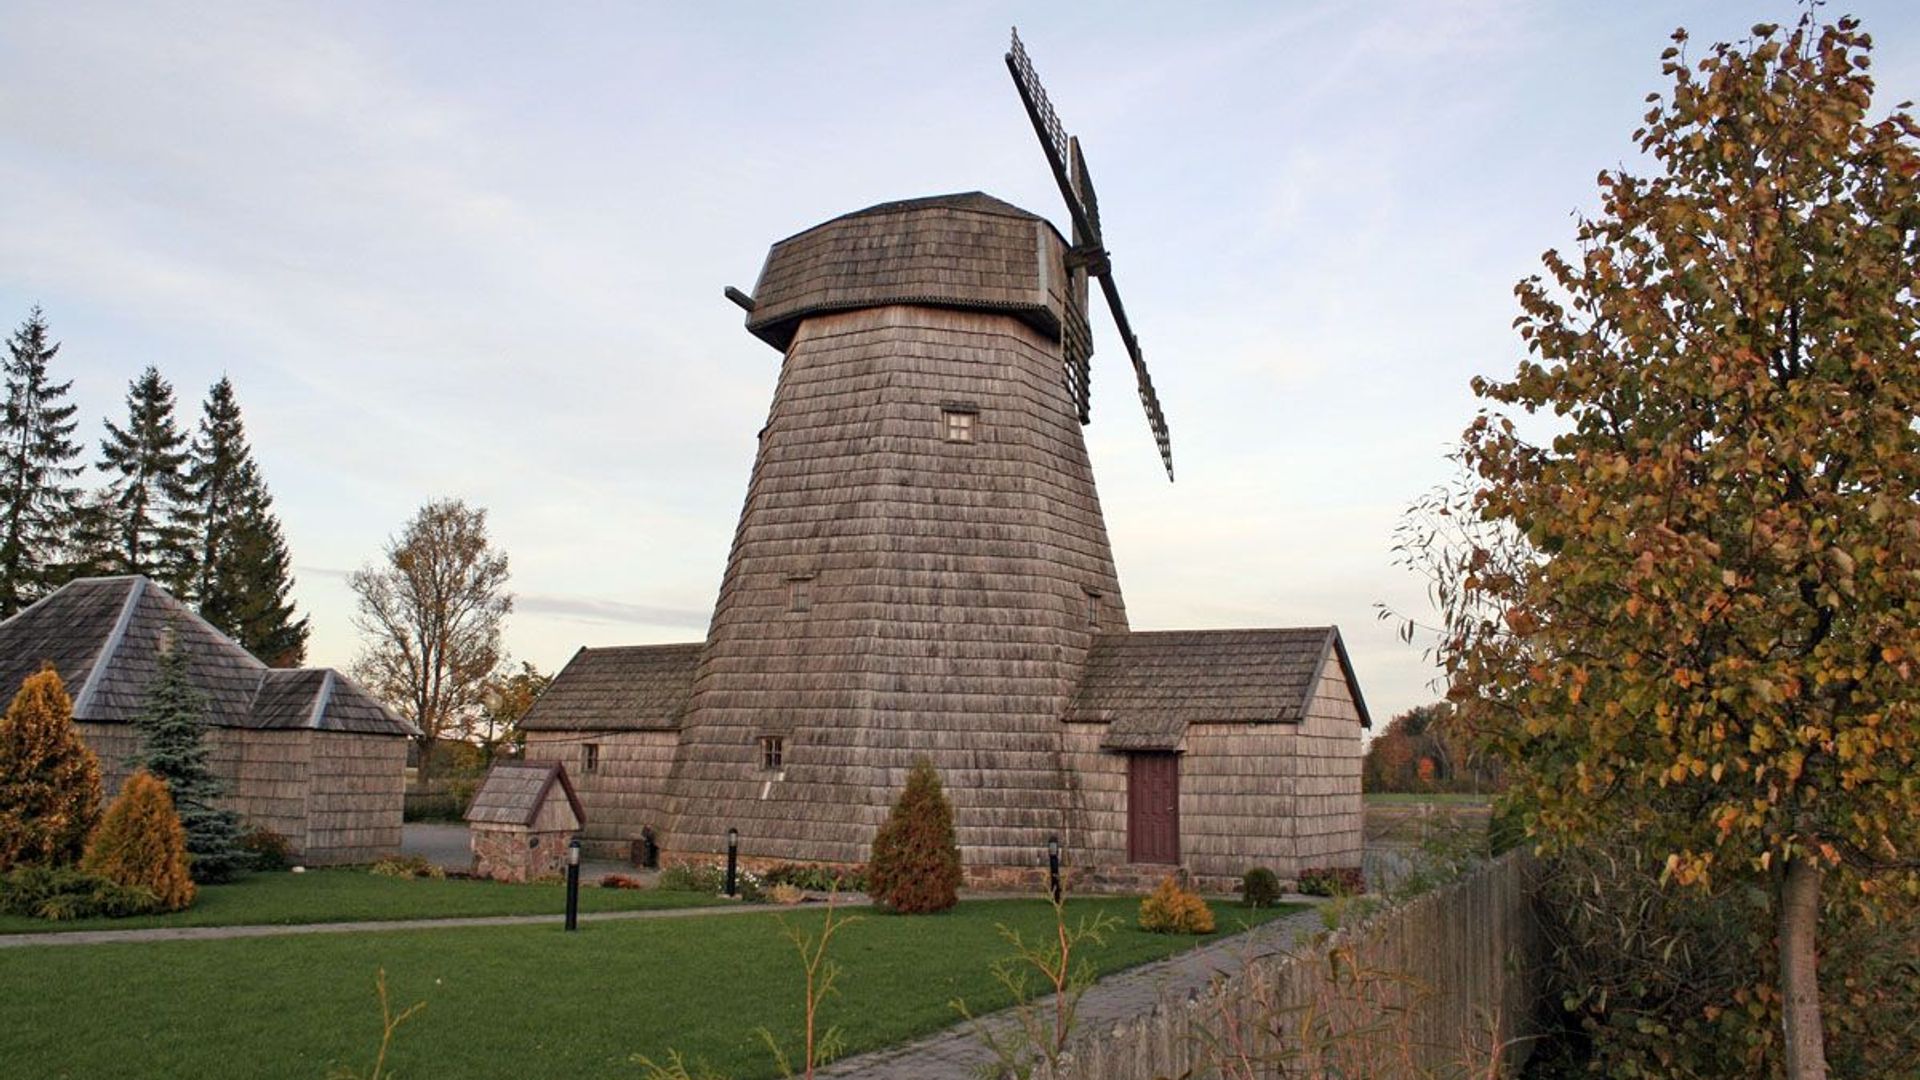 Purpliai Windmill